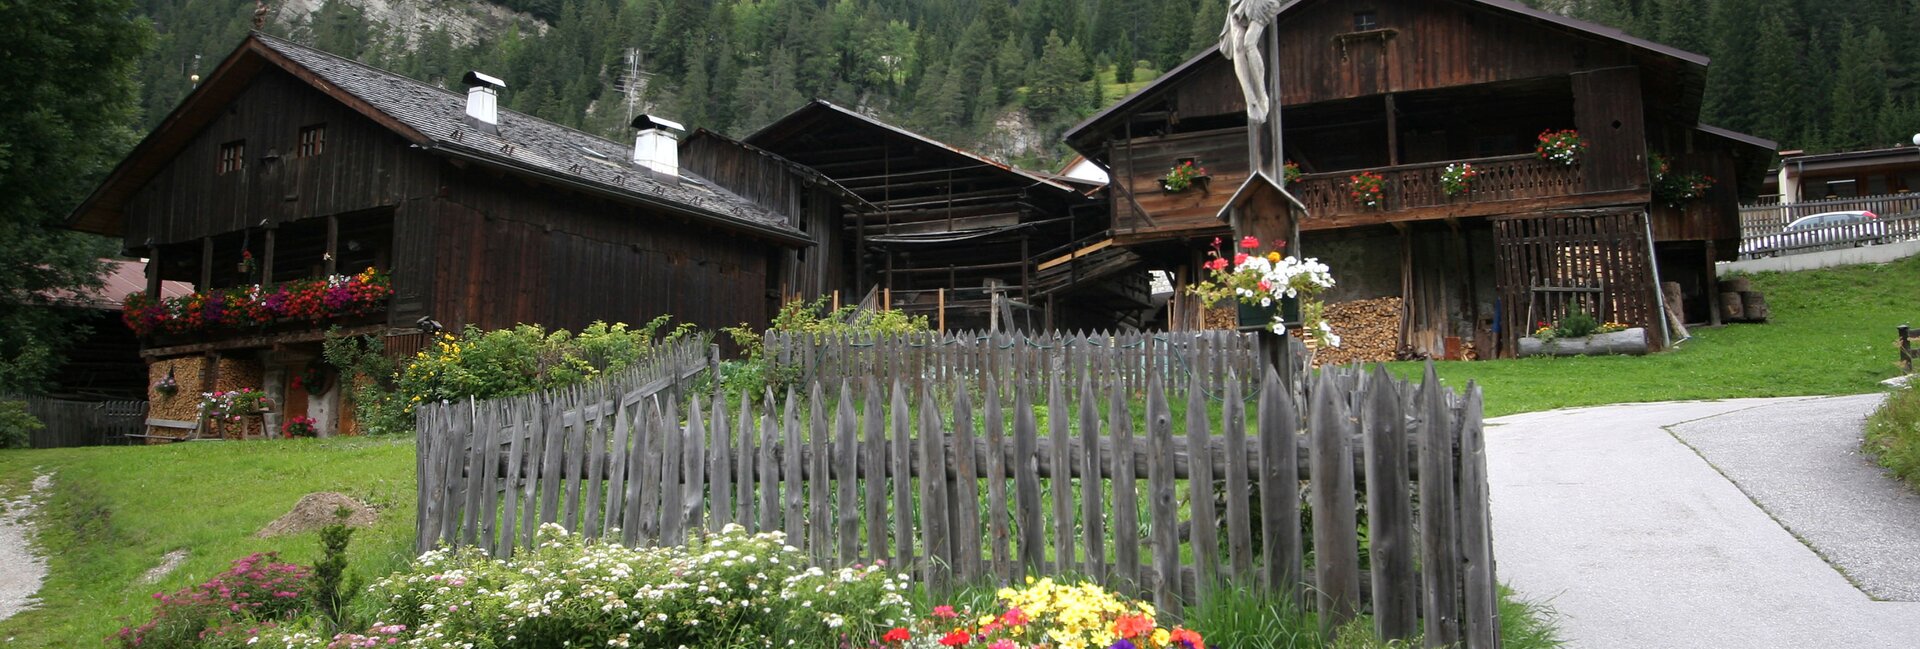 Die traditionellen Scheunen von Trentino - typischen Wohnholz